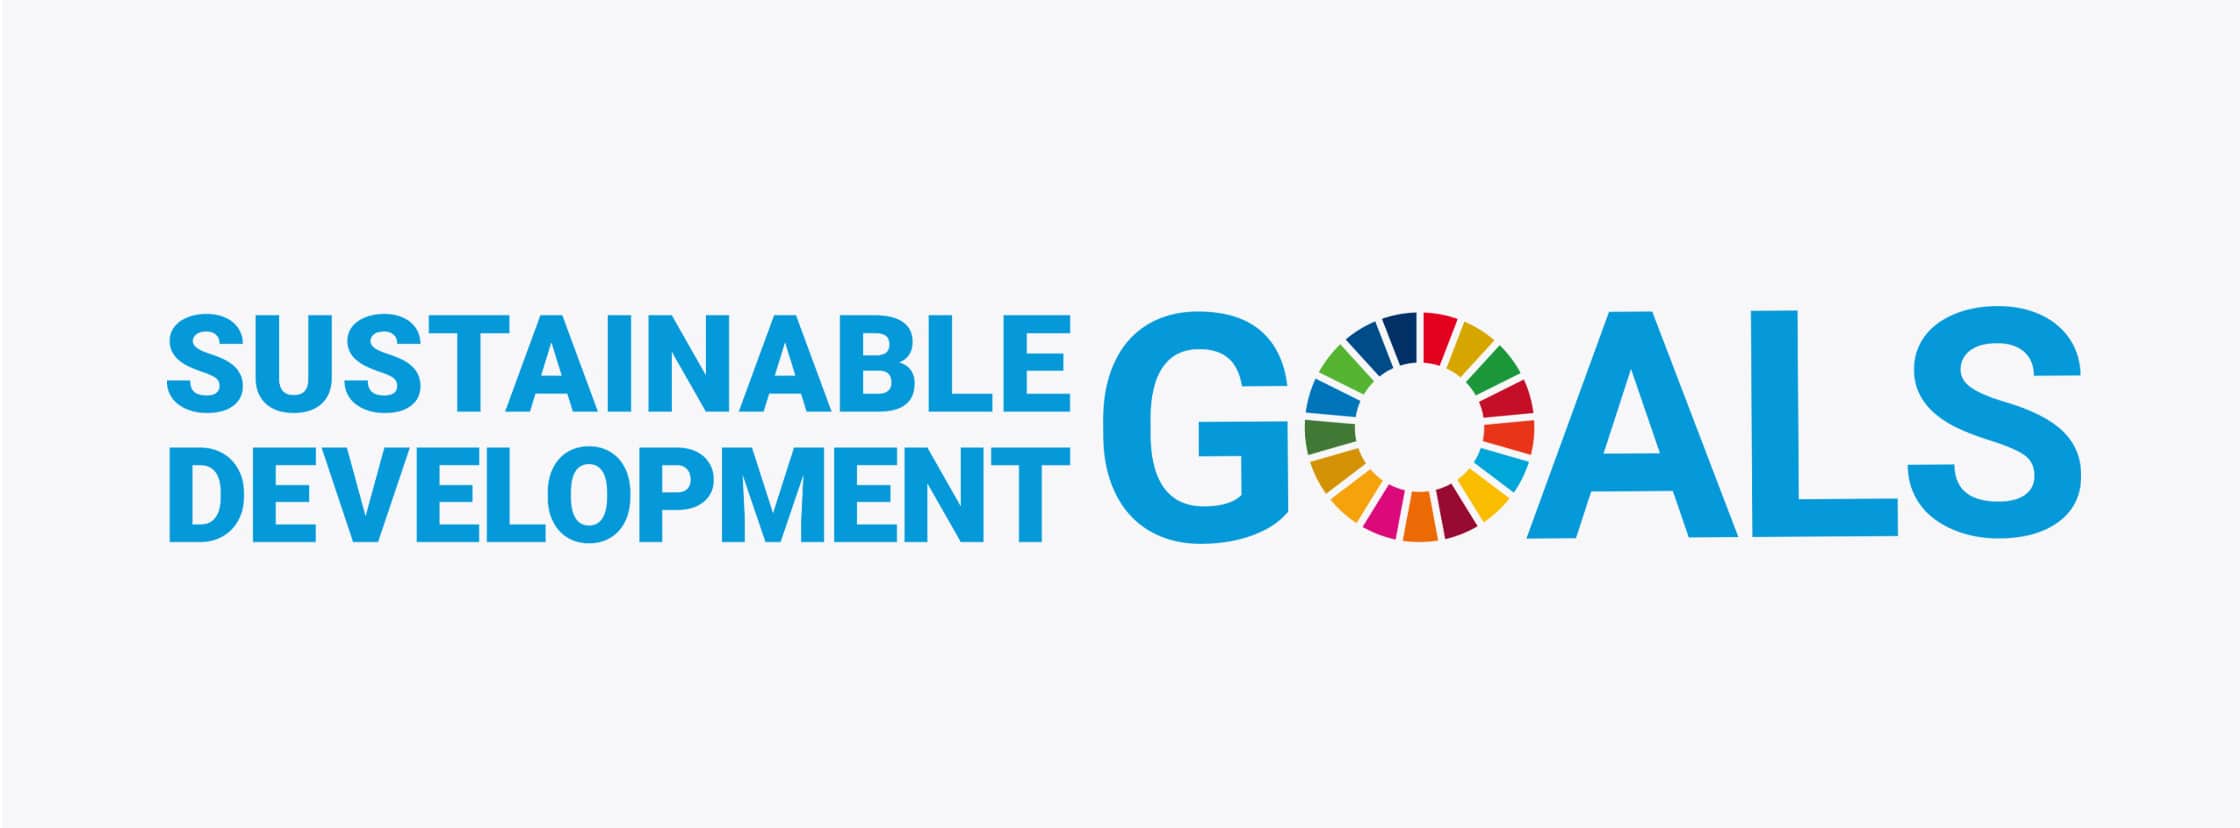 SDGsの取り組みイメージ